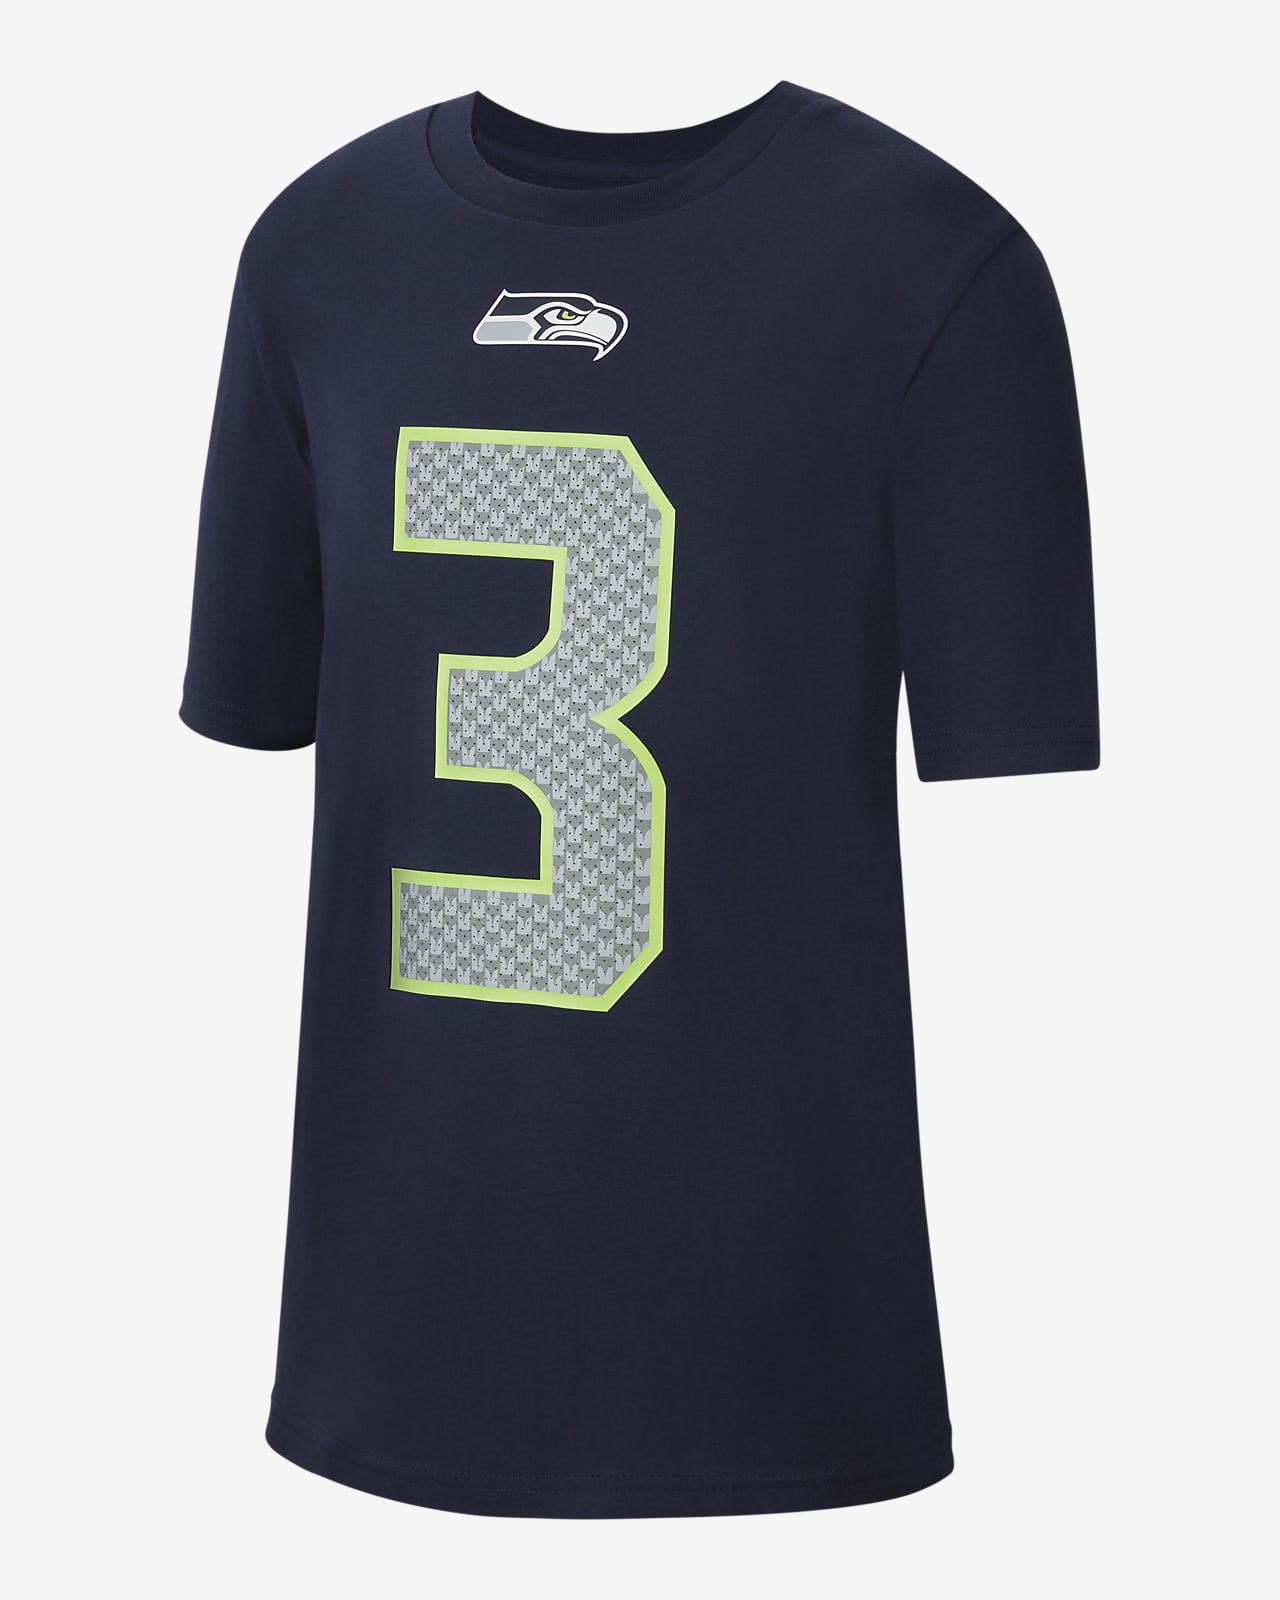 Nike (NFL Seattle Seahawks) Older Kids' T-Shirt